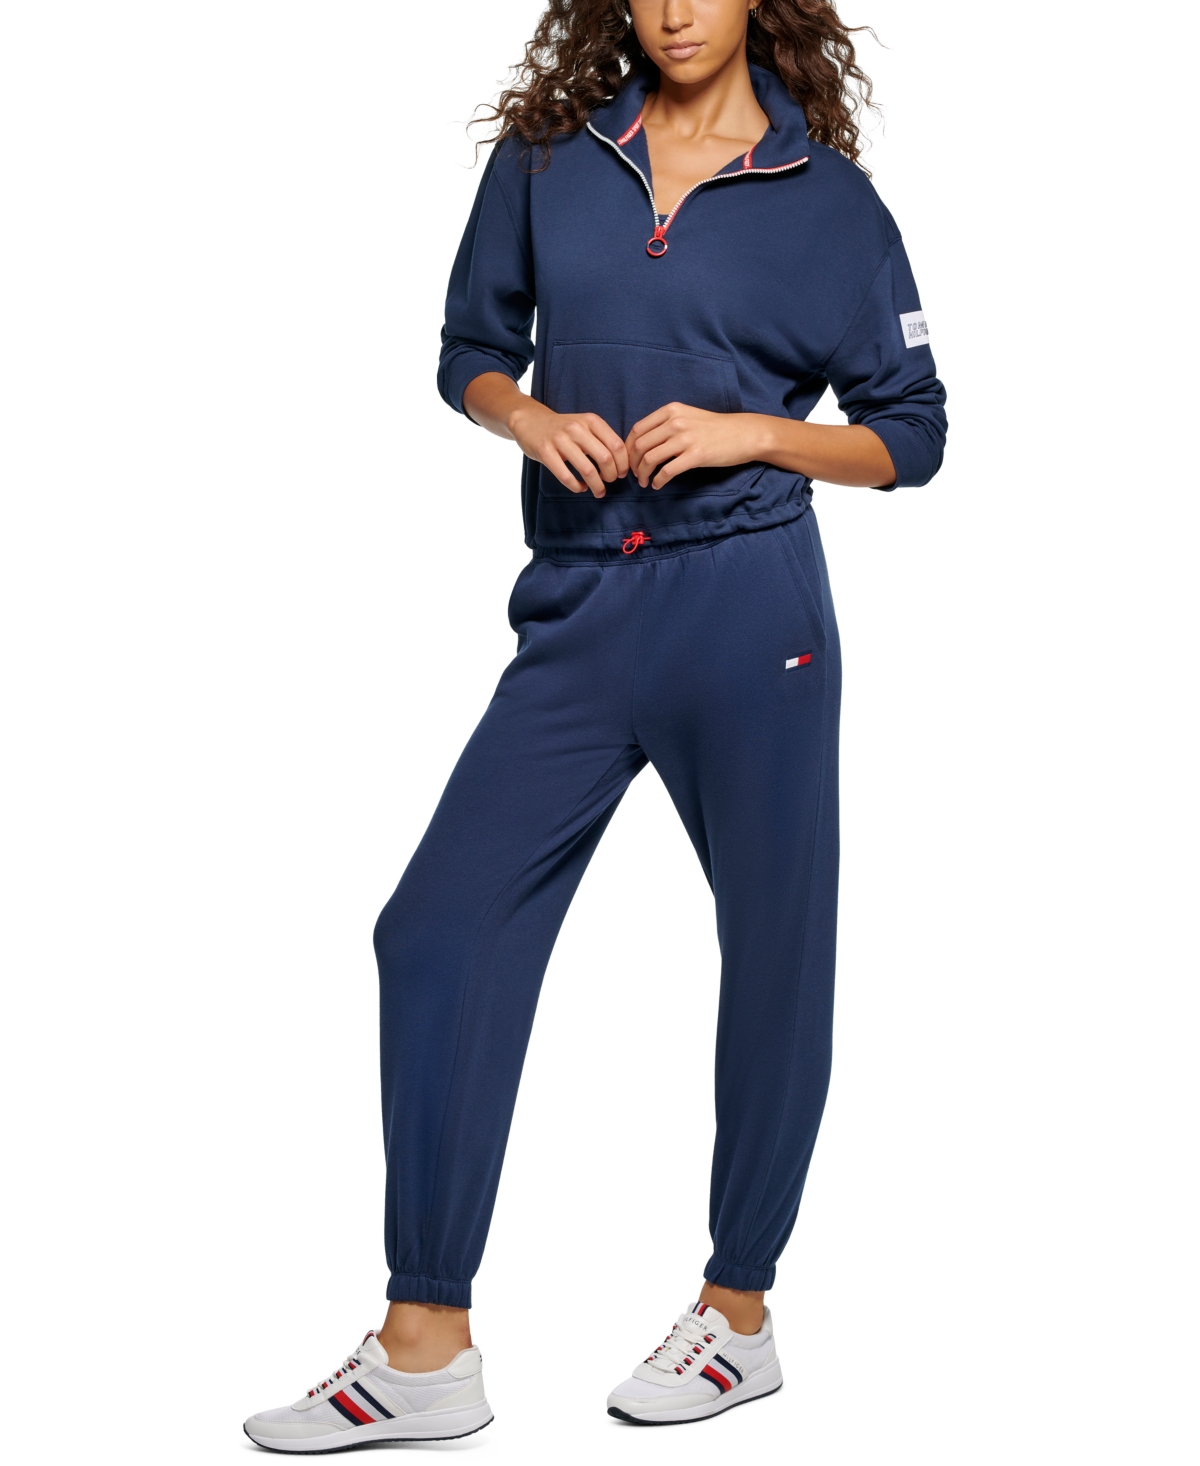  Tommy Hilfiger Sport Women's Quarter-Zip Mock-Neck Sweatshirt